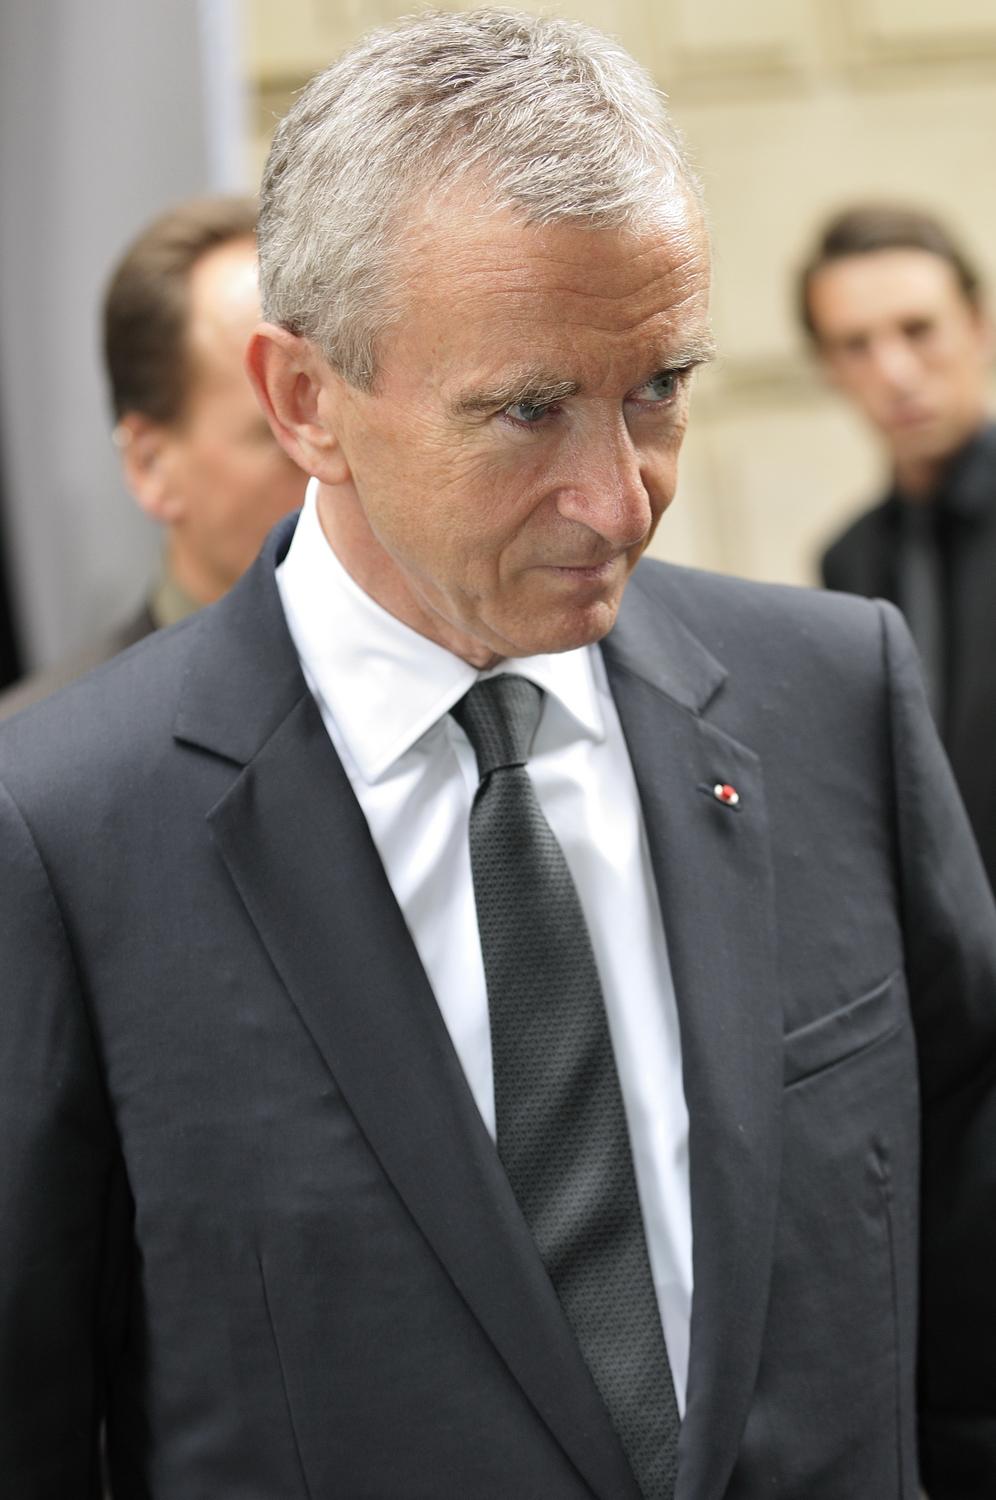 Frédéric Arnault - Wikipedia